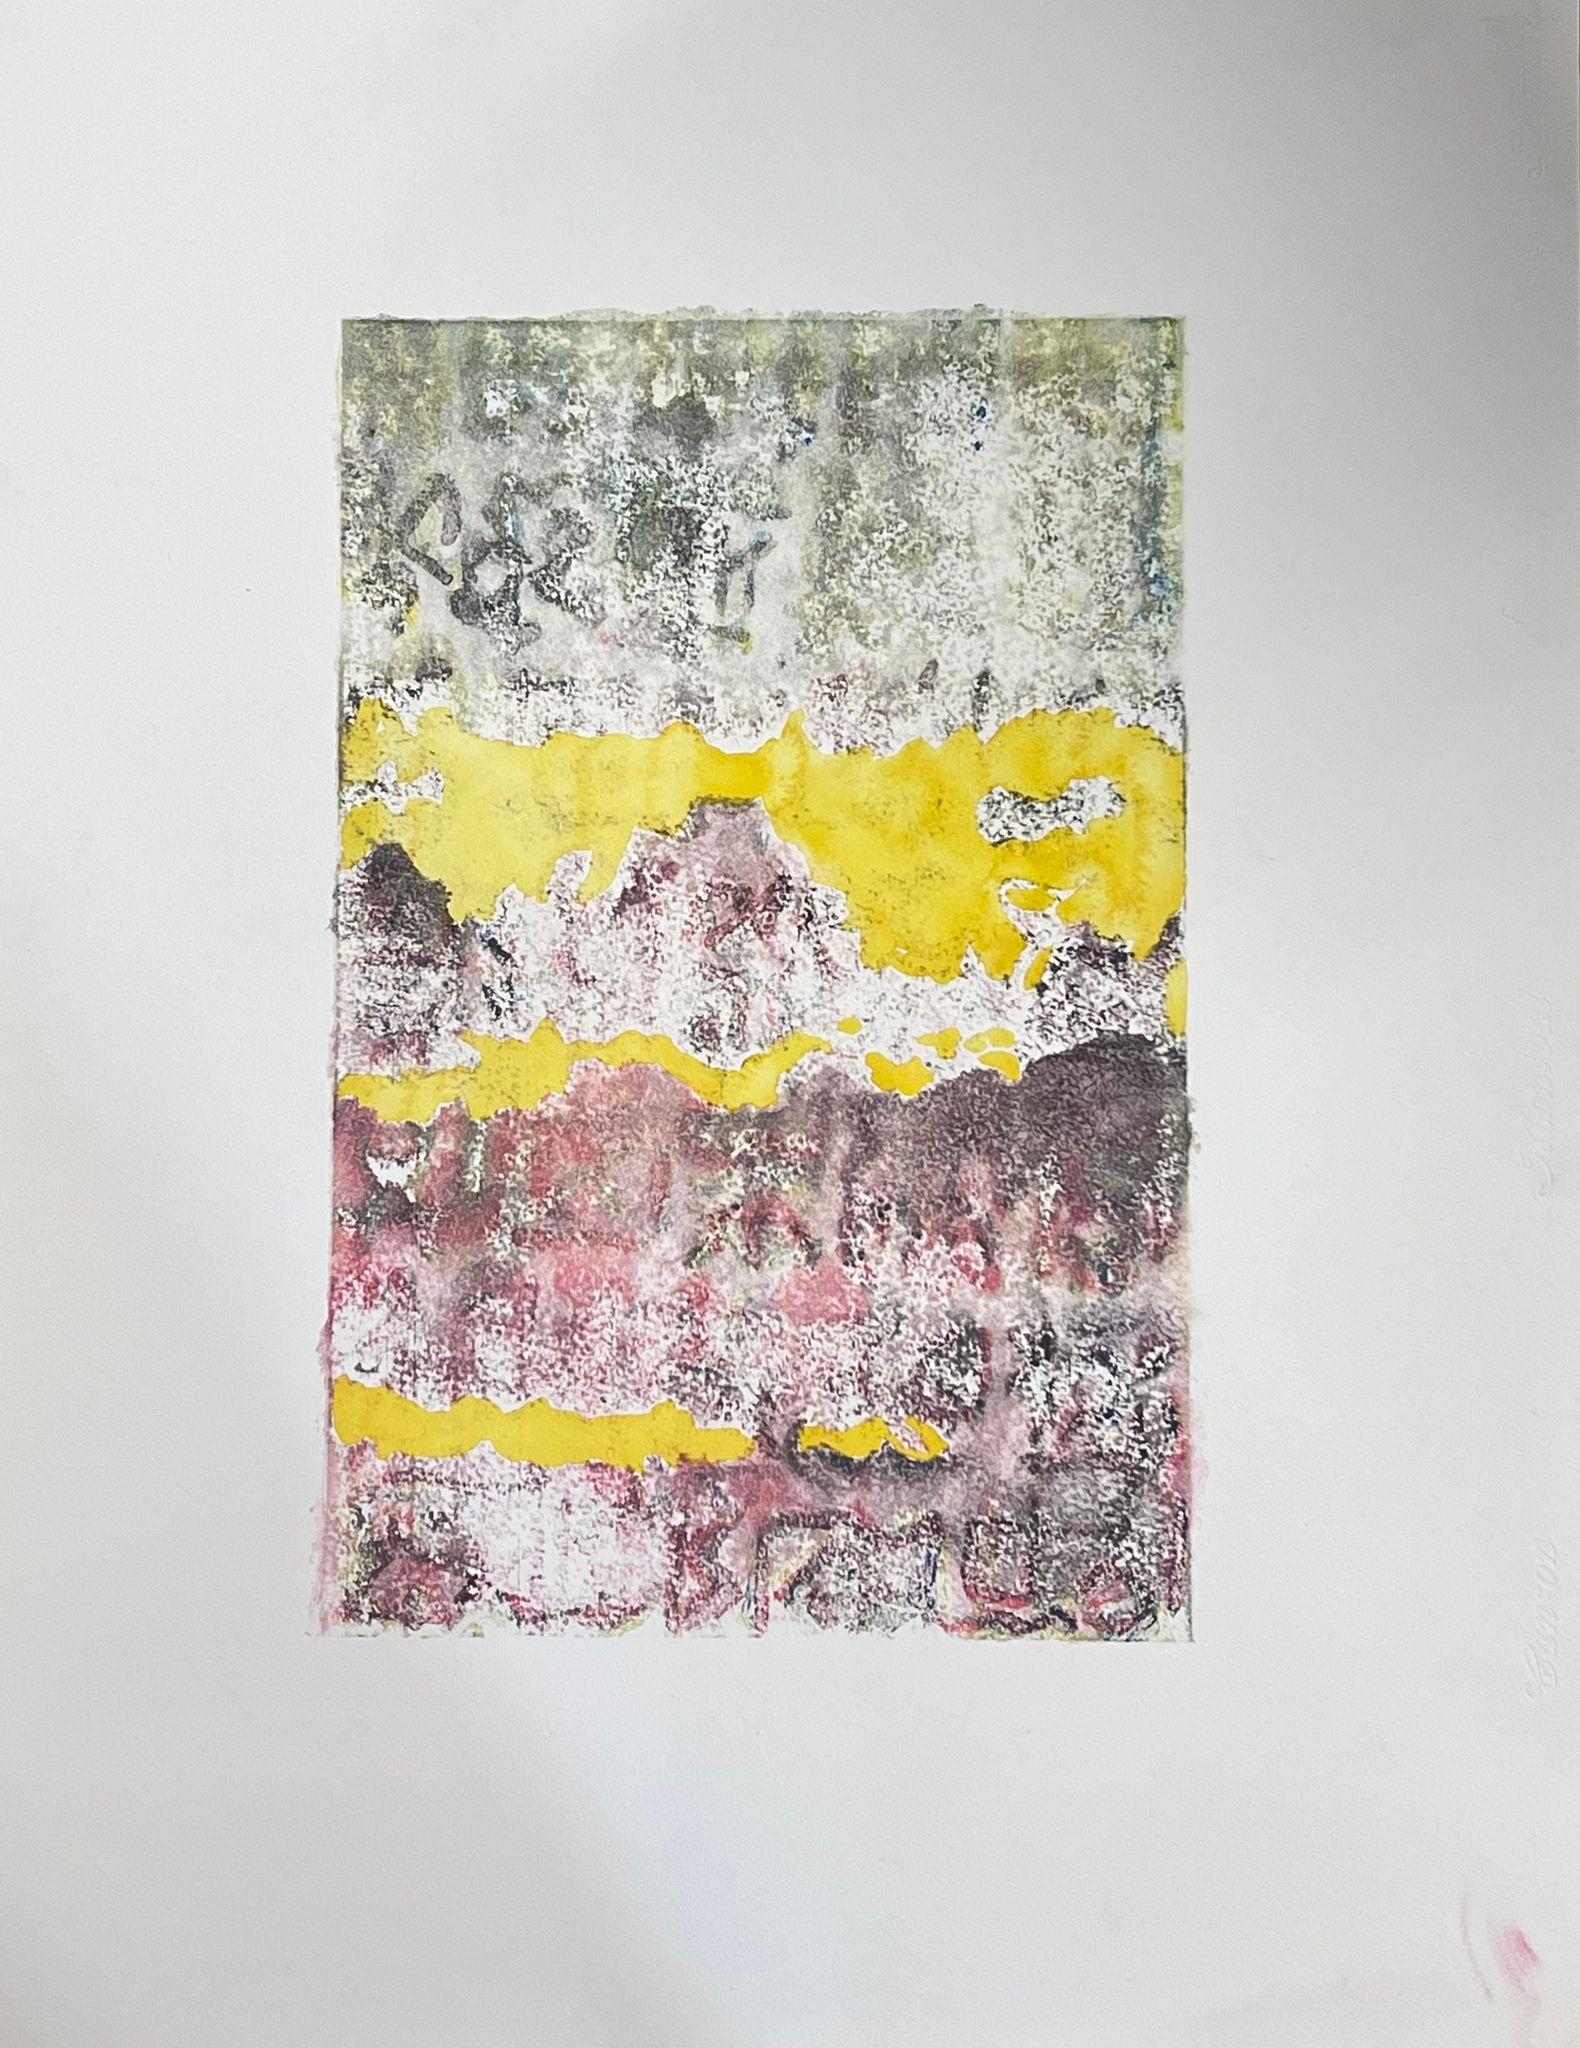 Abstract Painting Jacques Coulais (1955-2011) - Peinture abstraite expressionniste française d'origine